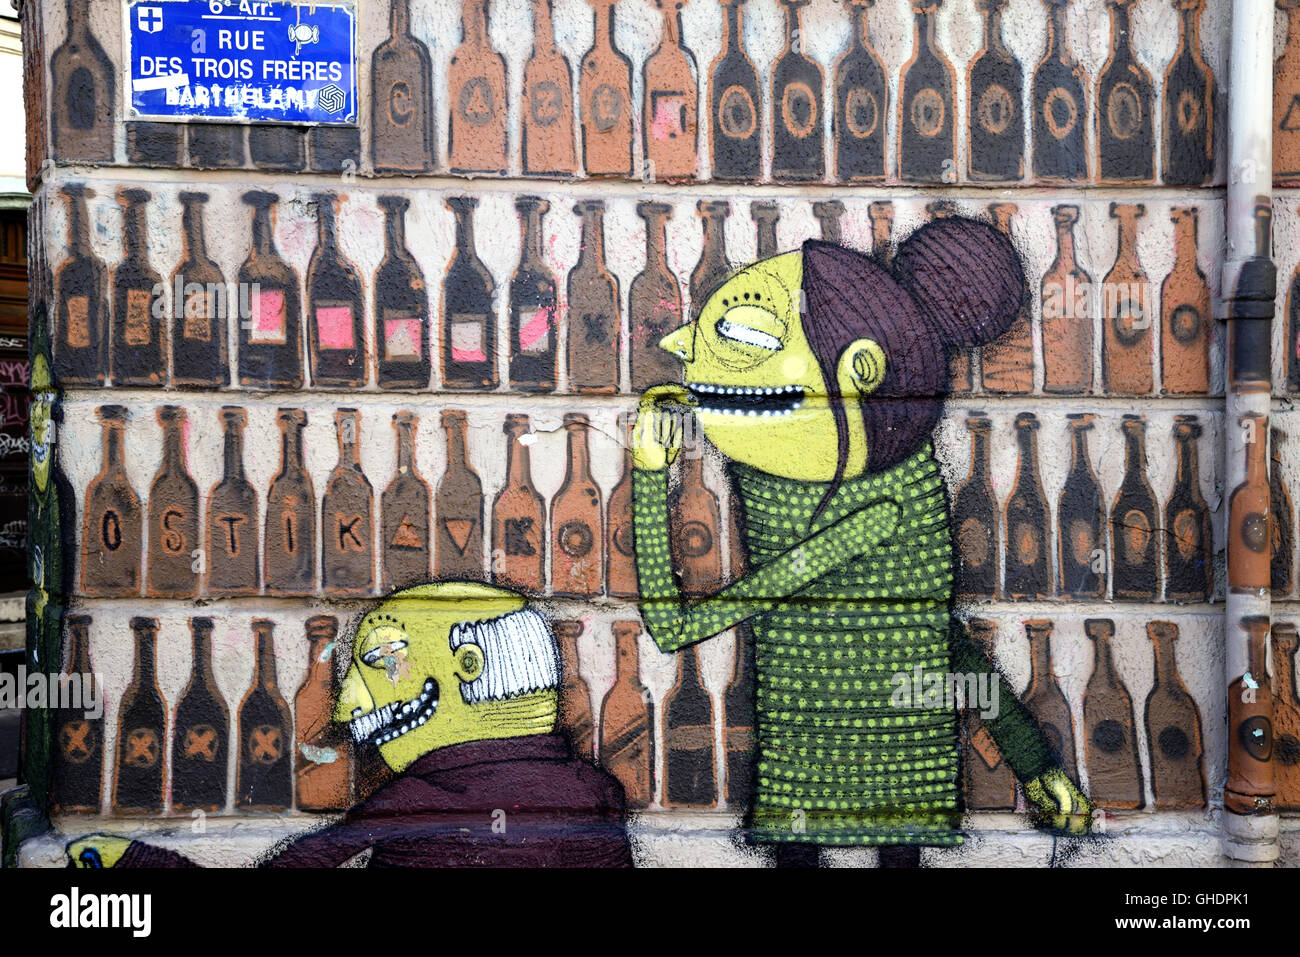 Pittura murale del giovane nel negozio di liquori o di licenza Off selezionando una bottiglia di vino, Arte di strada, Marsiglia o Marsiglia Francia Foto Stock